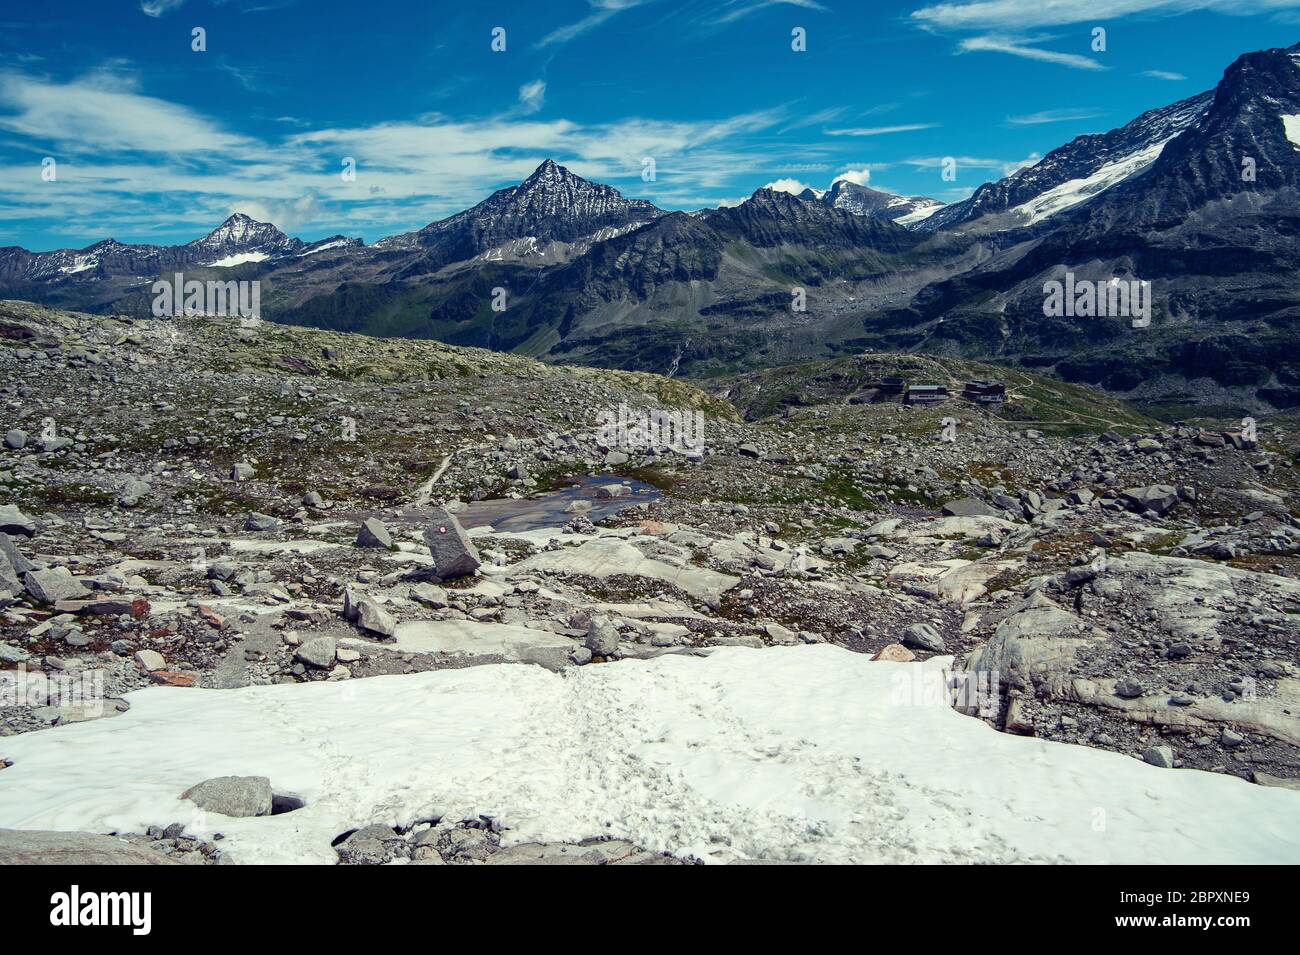 Paysage des alpes, les montagnes en face de ciel bleu Banque D'Images